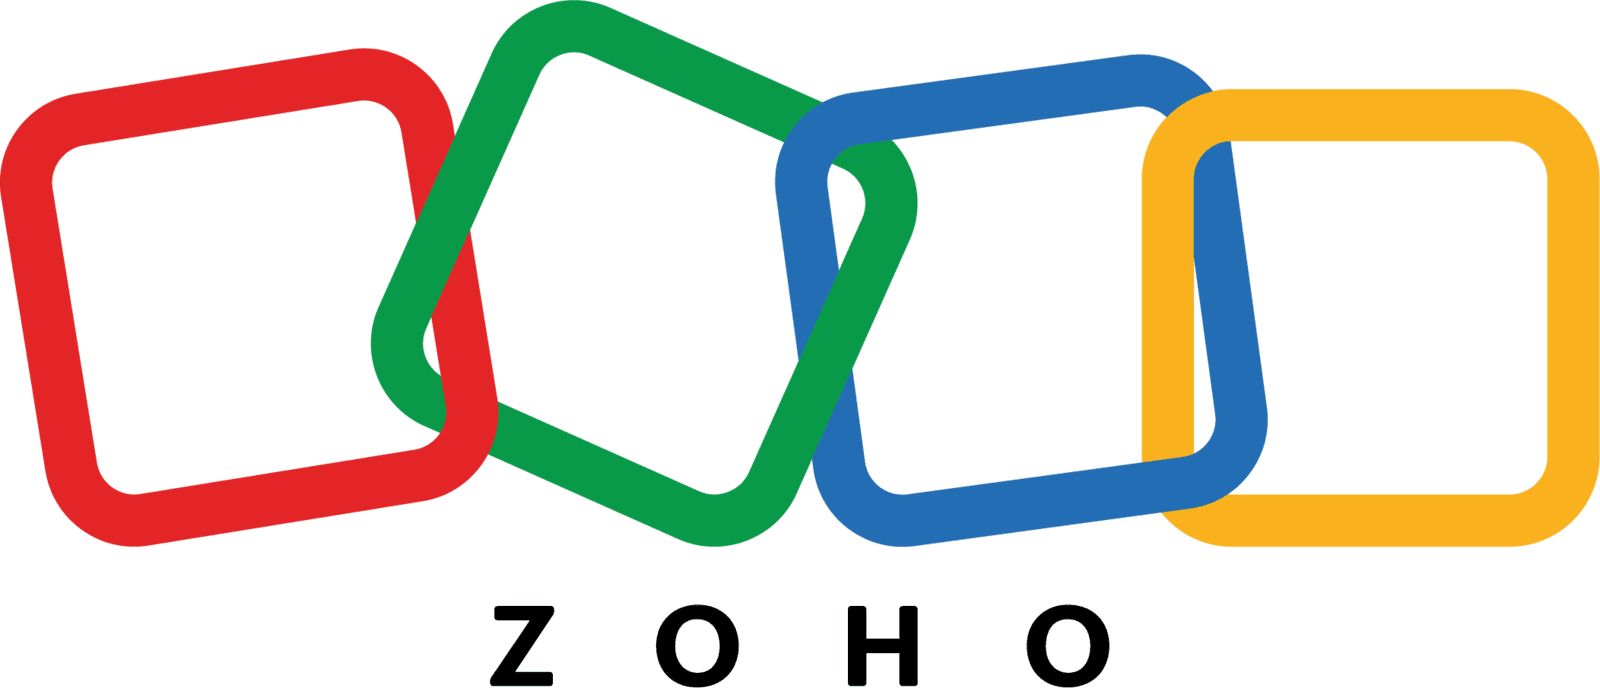 Zoho Partner Reviews, Infolytics South Africa Reviews